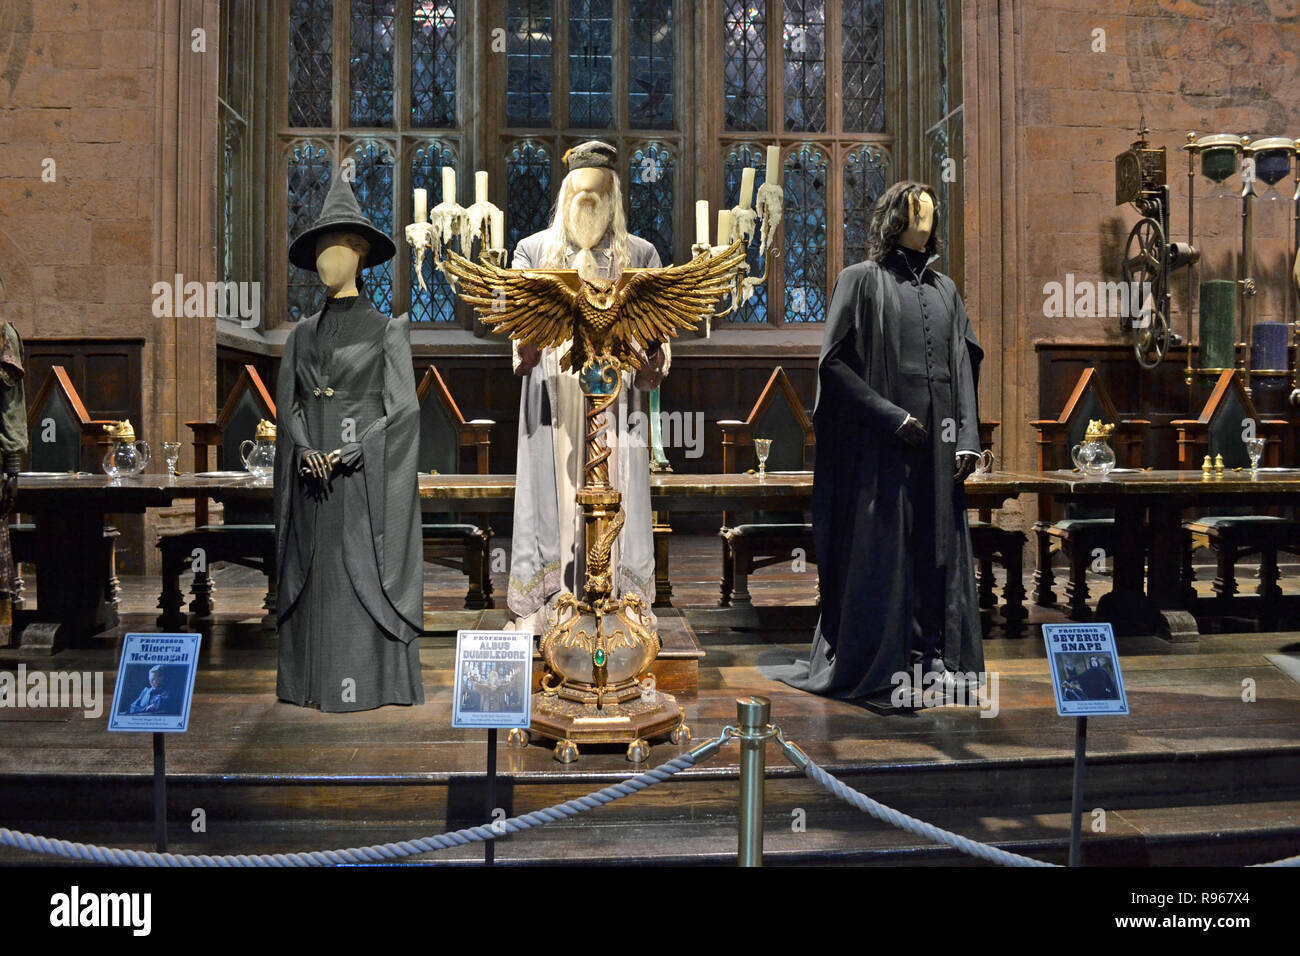 Los profesores Dumbledore, Snape y Mcgonagall Harry Potter los estudios Leavesden, Londres, Reino Unido. Foto de stock